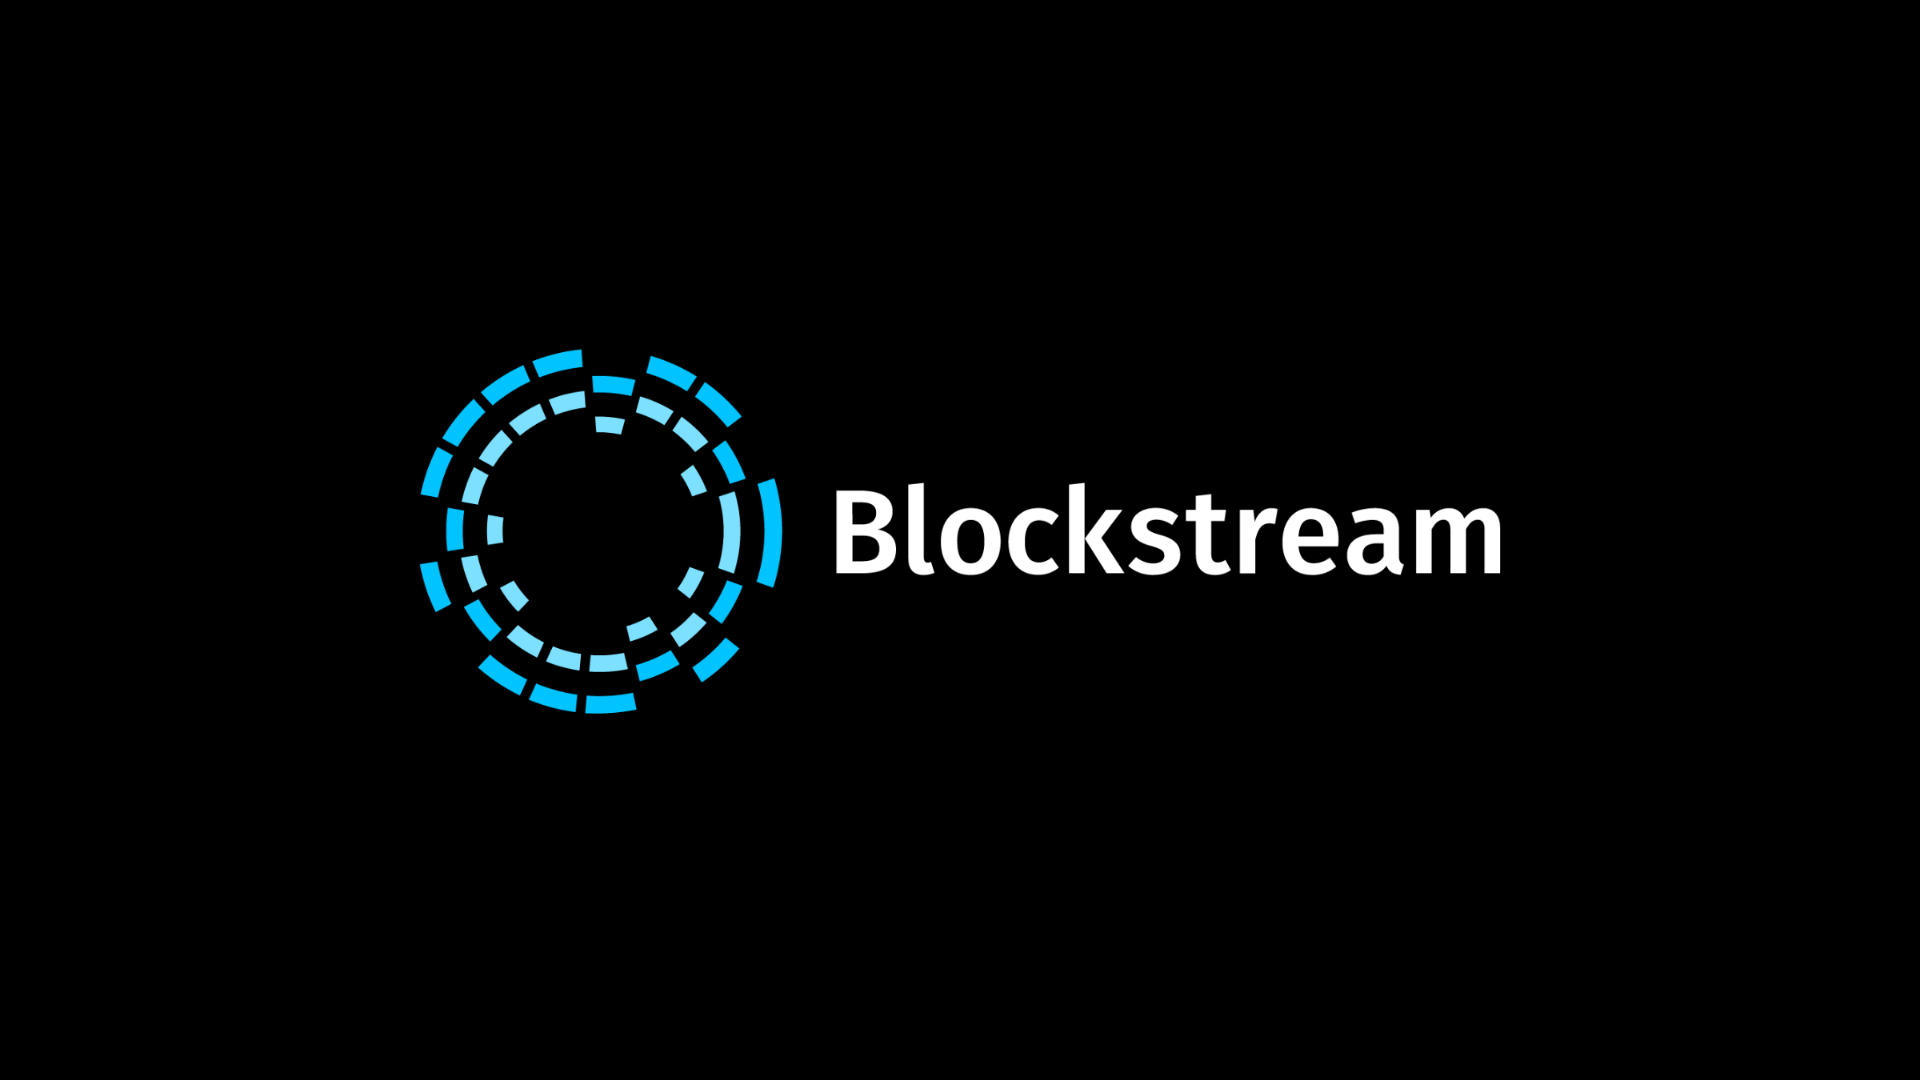 Blockstream събра $125 милиона, за да финансира майнинг операциите си